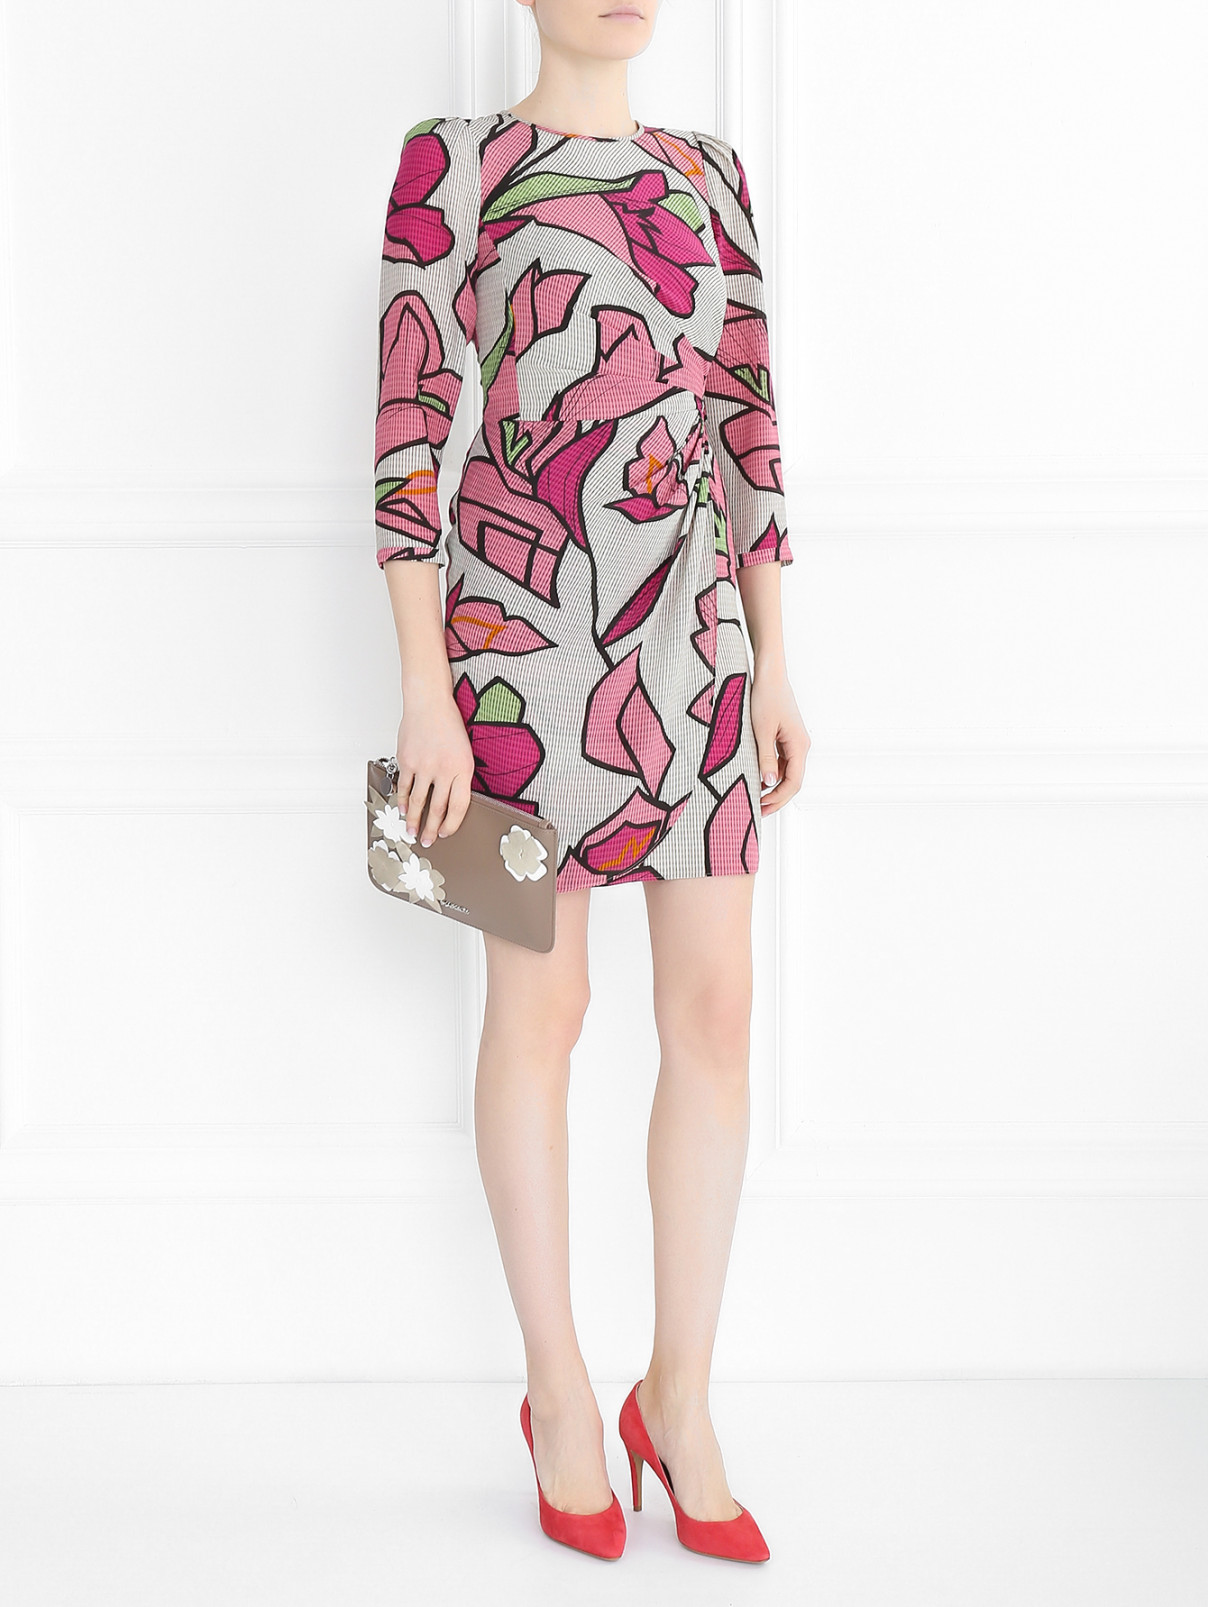 Драпированное платье из шелка с контрастным принтом Emporio Armani  –  Модель Общий вид  – Цвет:  Мультиколор